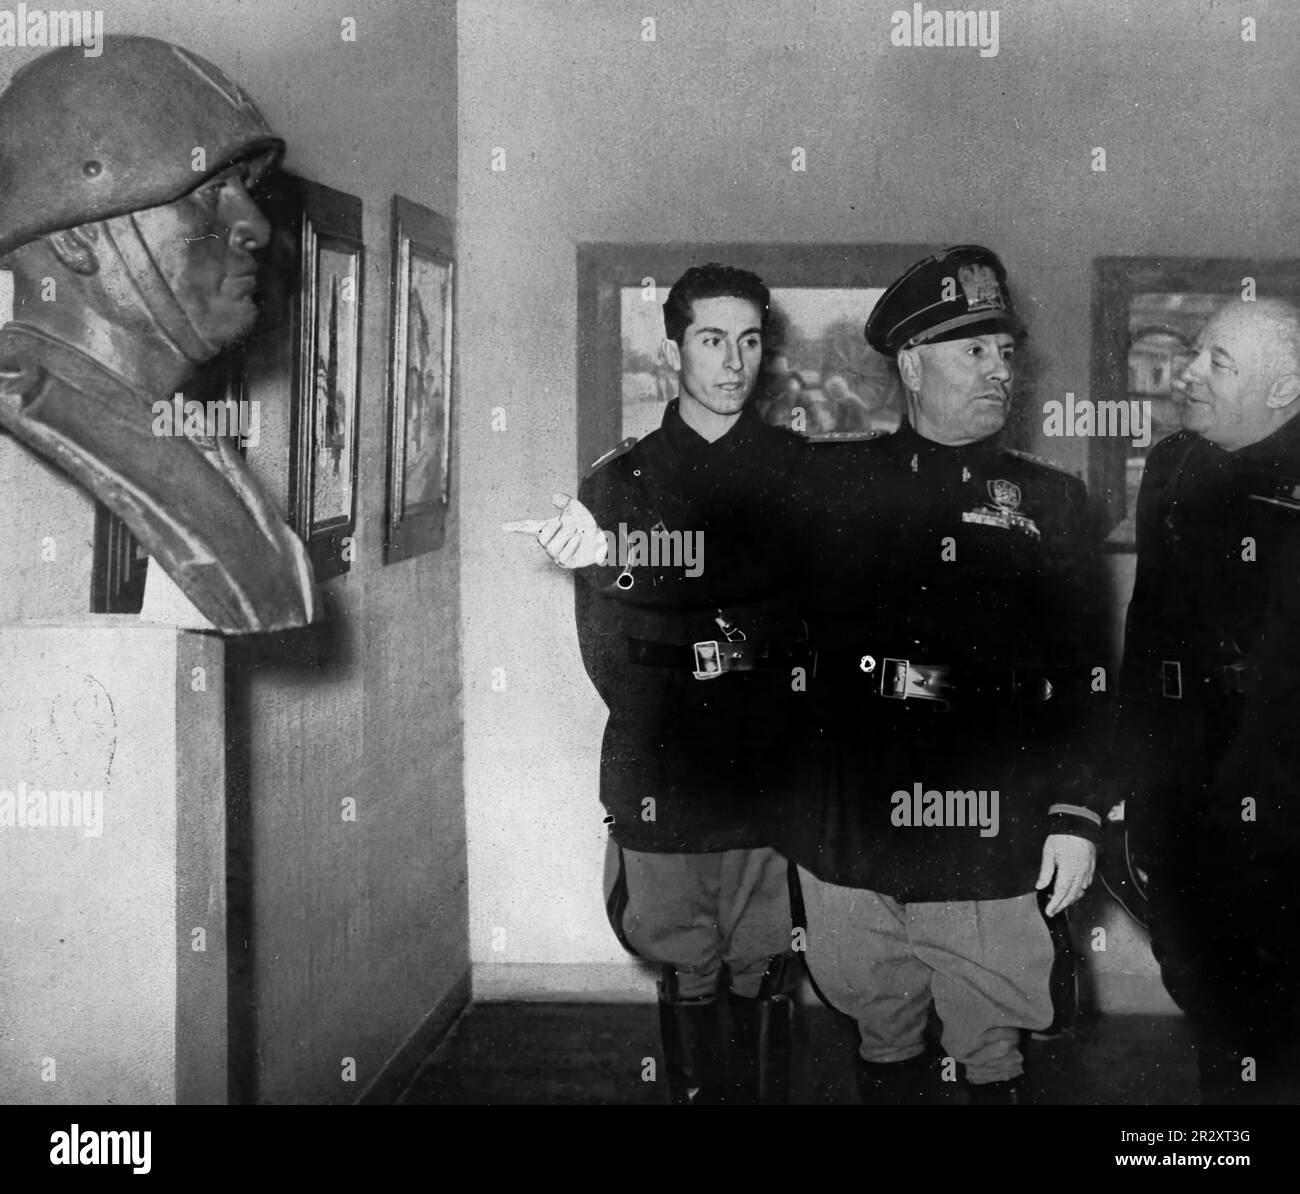 1939, image de propagande du dictateur italien Benito Mussolini montrant un buste qui lui était consacré. Banque D'Images